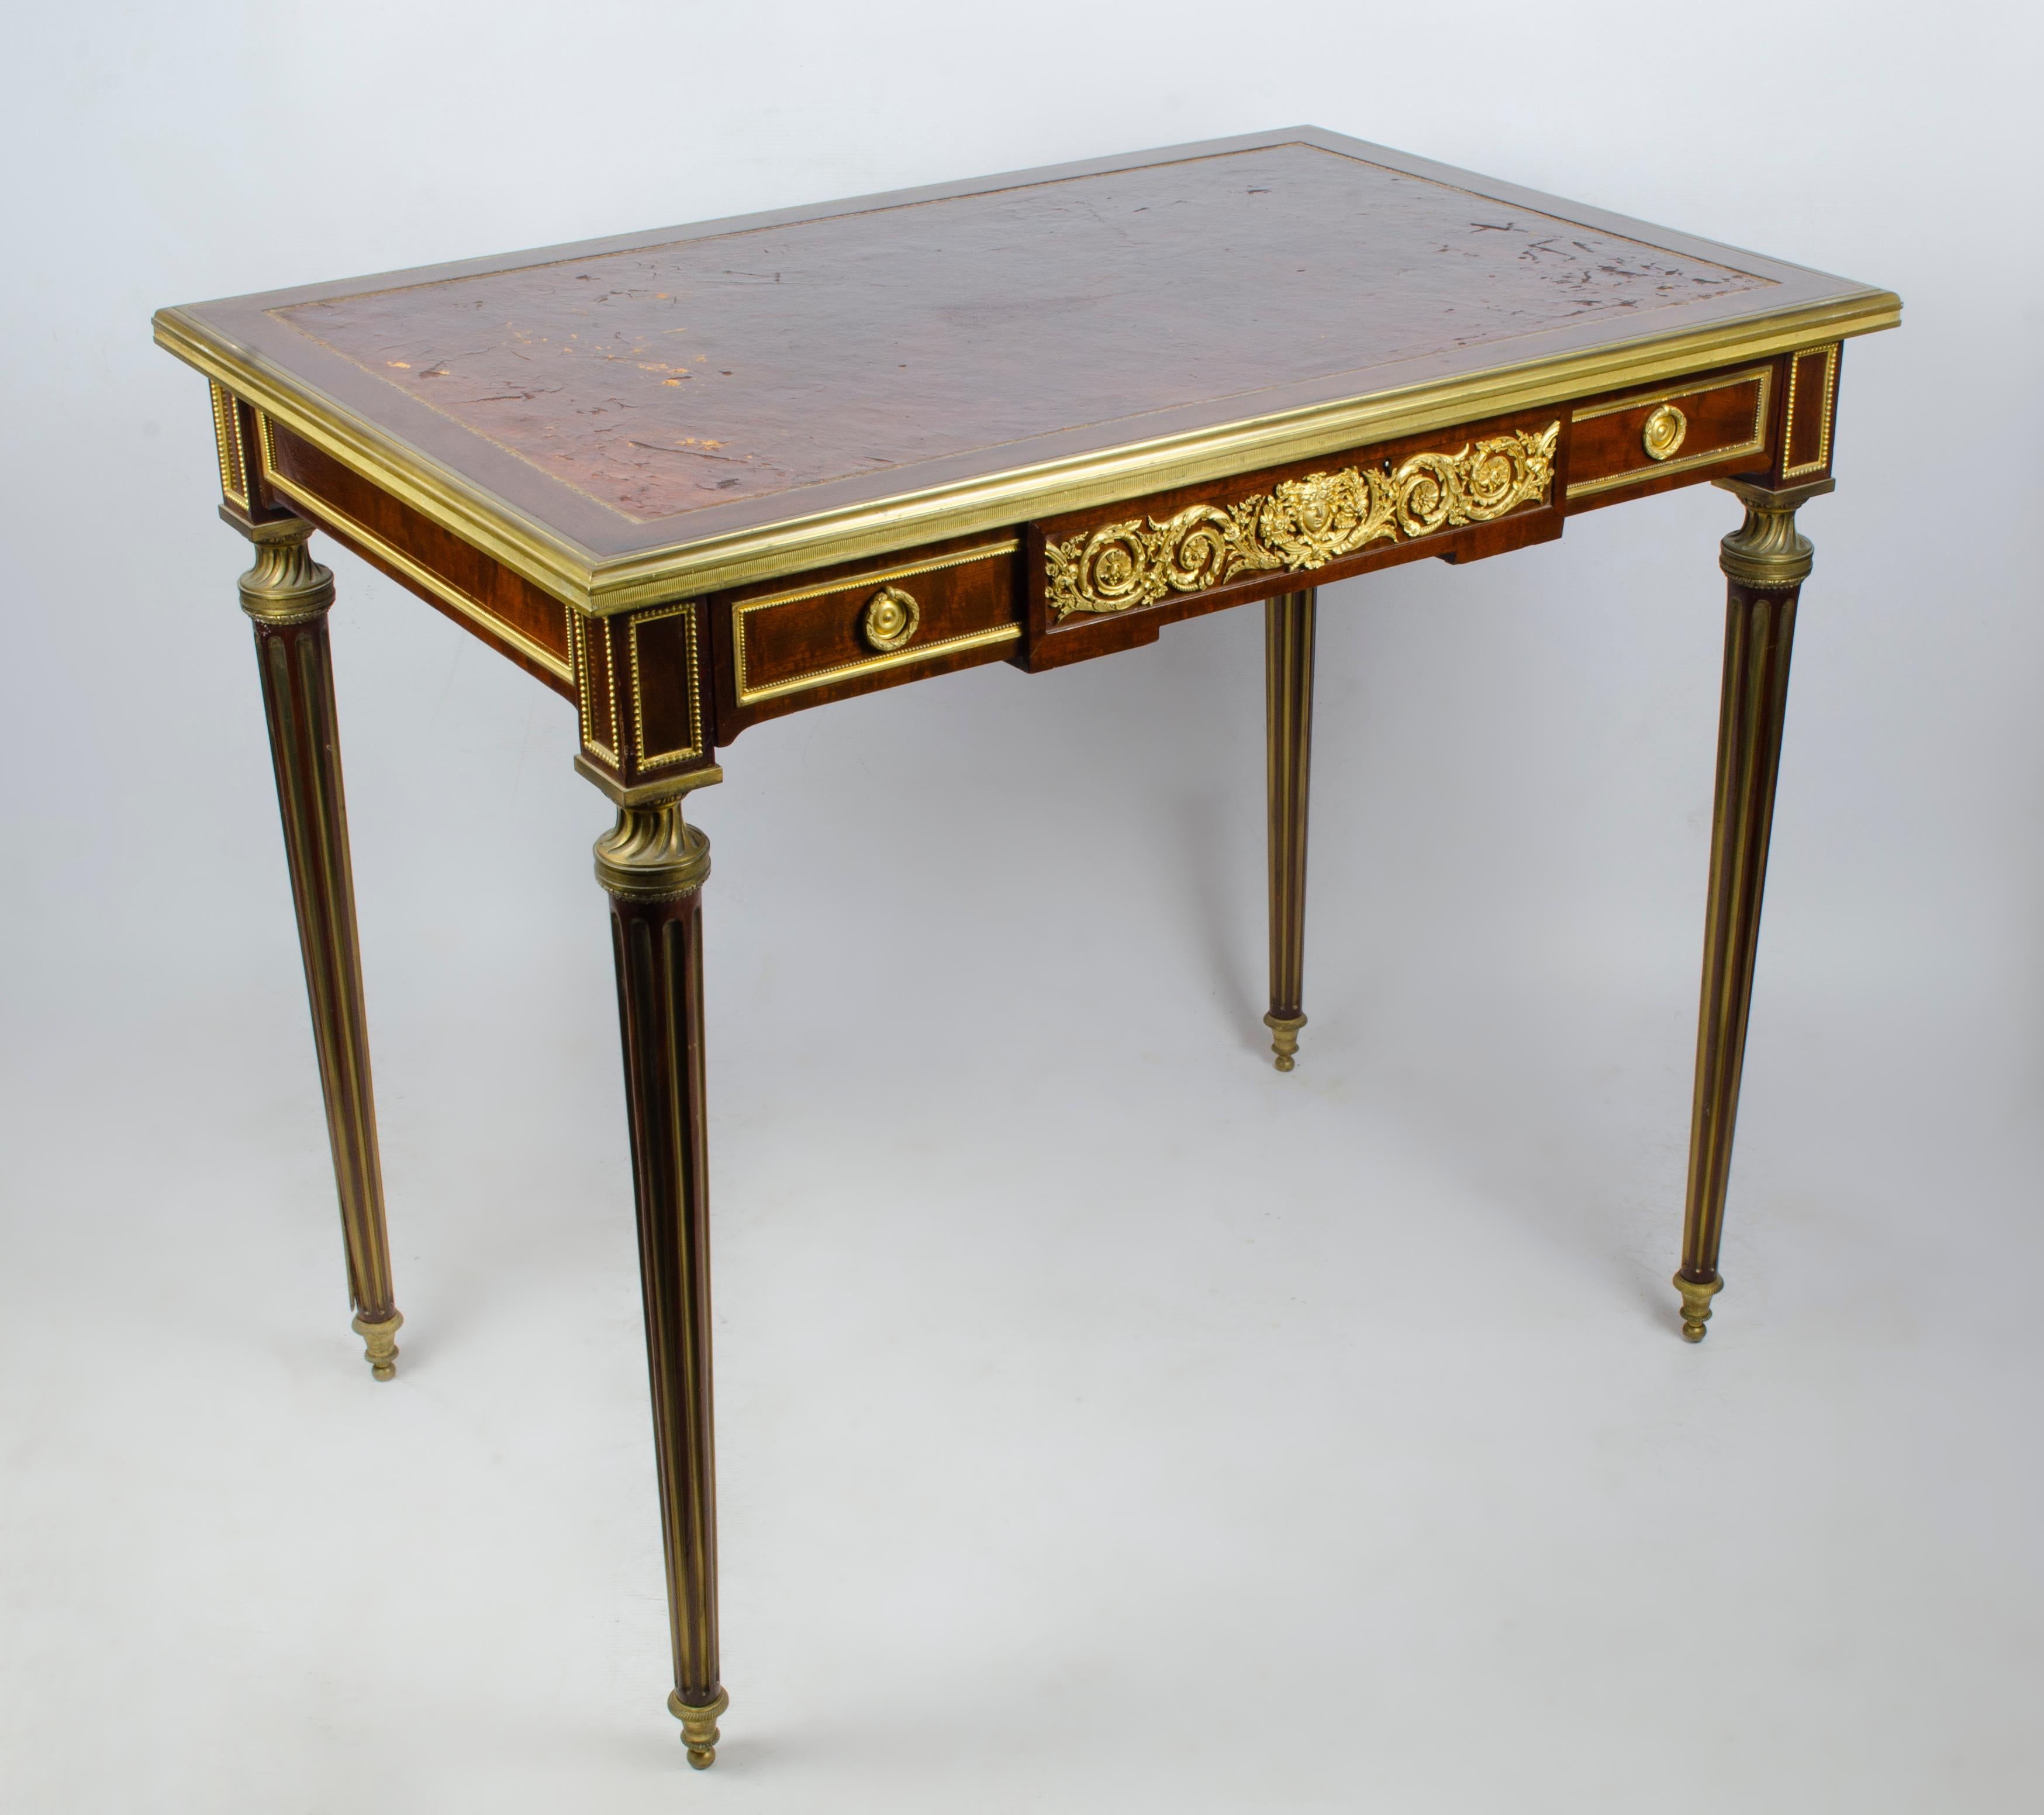 Eleganter Schreibtisch im Stil Louis XVI von Paul Sormani (1817-1877). Aus furniertem Holz und vergoldeter Bronze, ummantelt mit patiniertem Havannaleder. Sie ist an allen Seiten mit reichem vergoldetem Bronzedekor verziert und enthält eine große